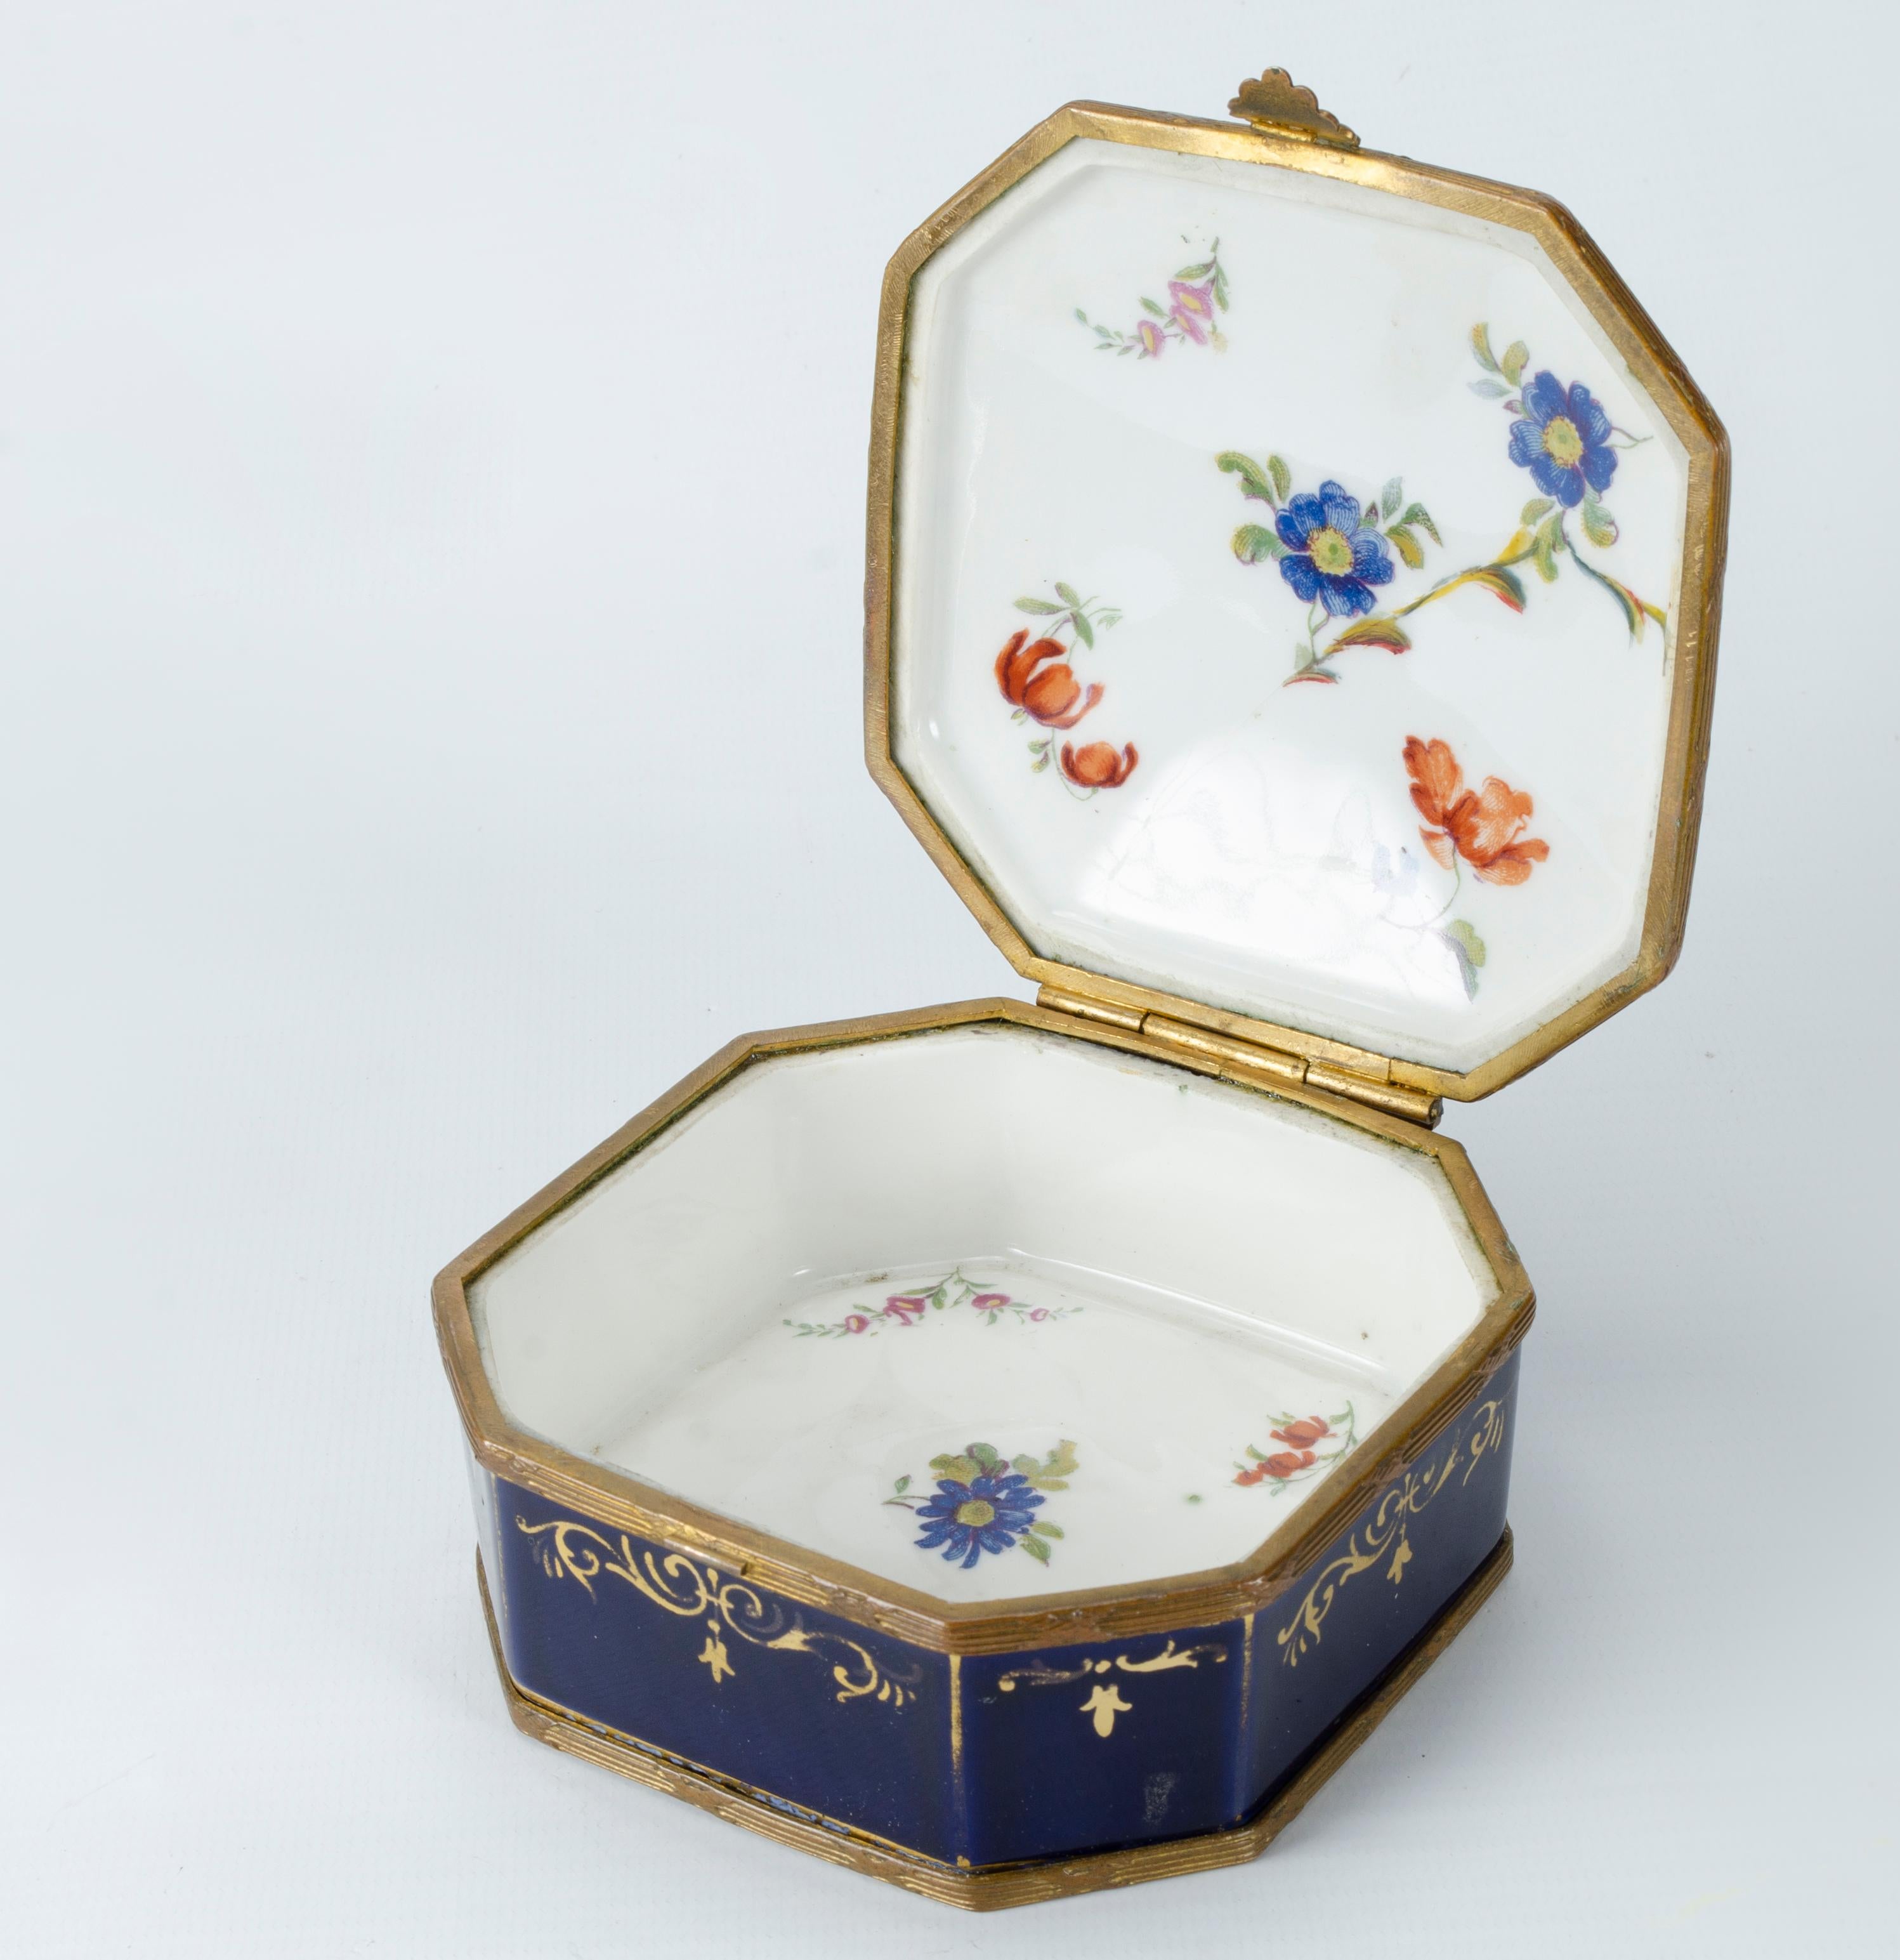 Boîte en porcelaine de Sèvres
Origine France Circa 1900
Décoration intérieure (fleurs)
monture en bronze
Boîte peinte à la main.